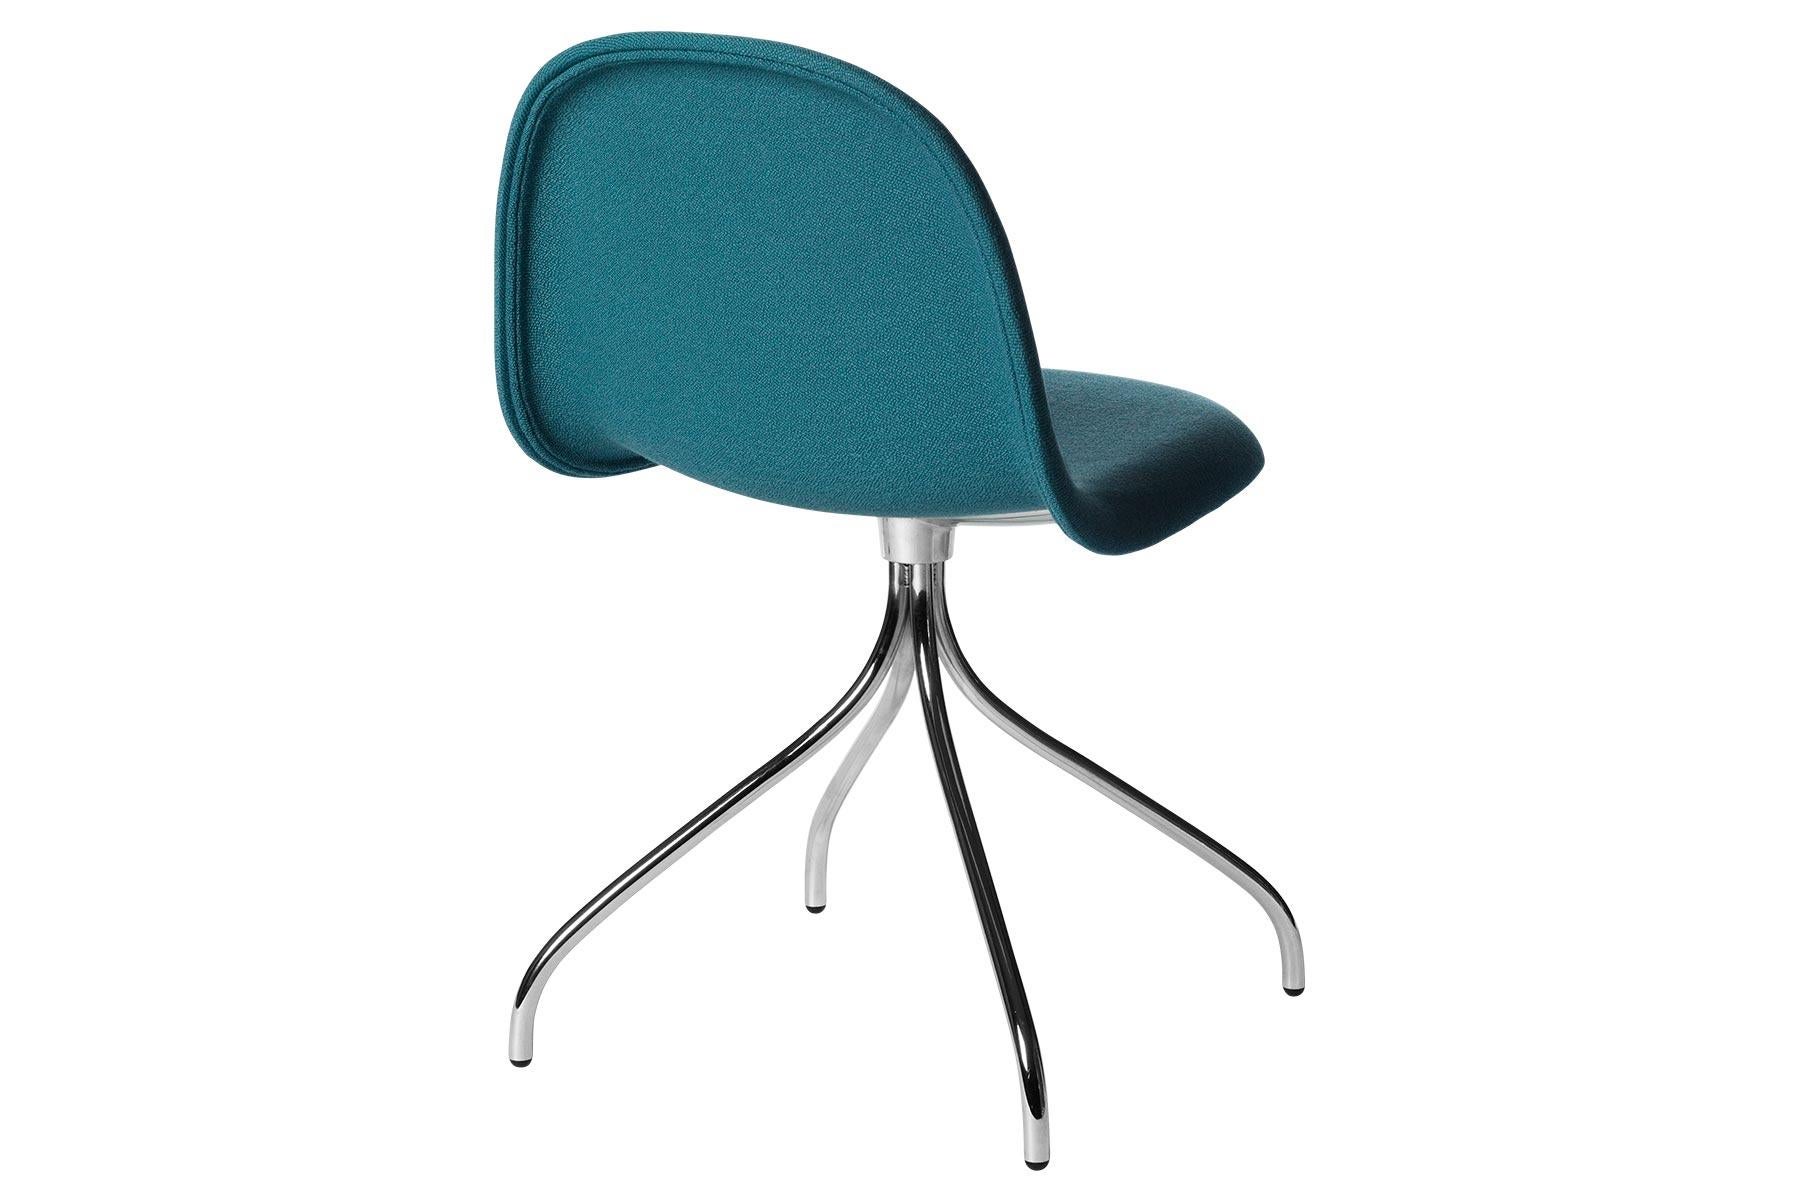 Der Stuhl Gubi von Komplot Design ist das erste Möbeldesign, das auf der innovativen Technik der dreidimensionalen Verformung von Furnier basiert. Das 3D-Design verleiht dem Stuhl einen bequemen Sitz und ein Gefühl von Leichtigkeit, da alle Kanten